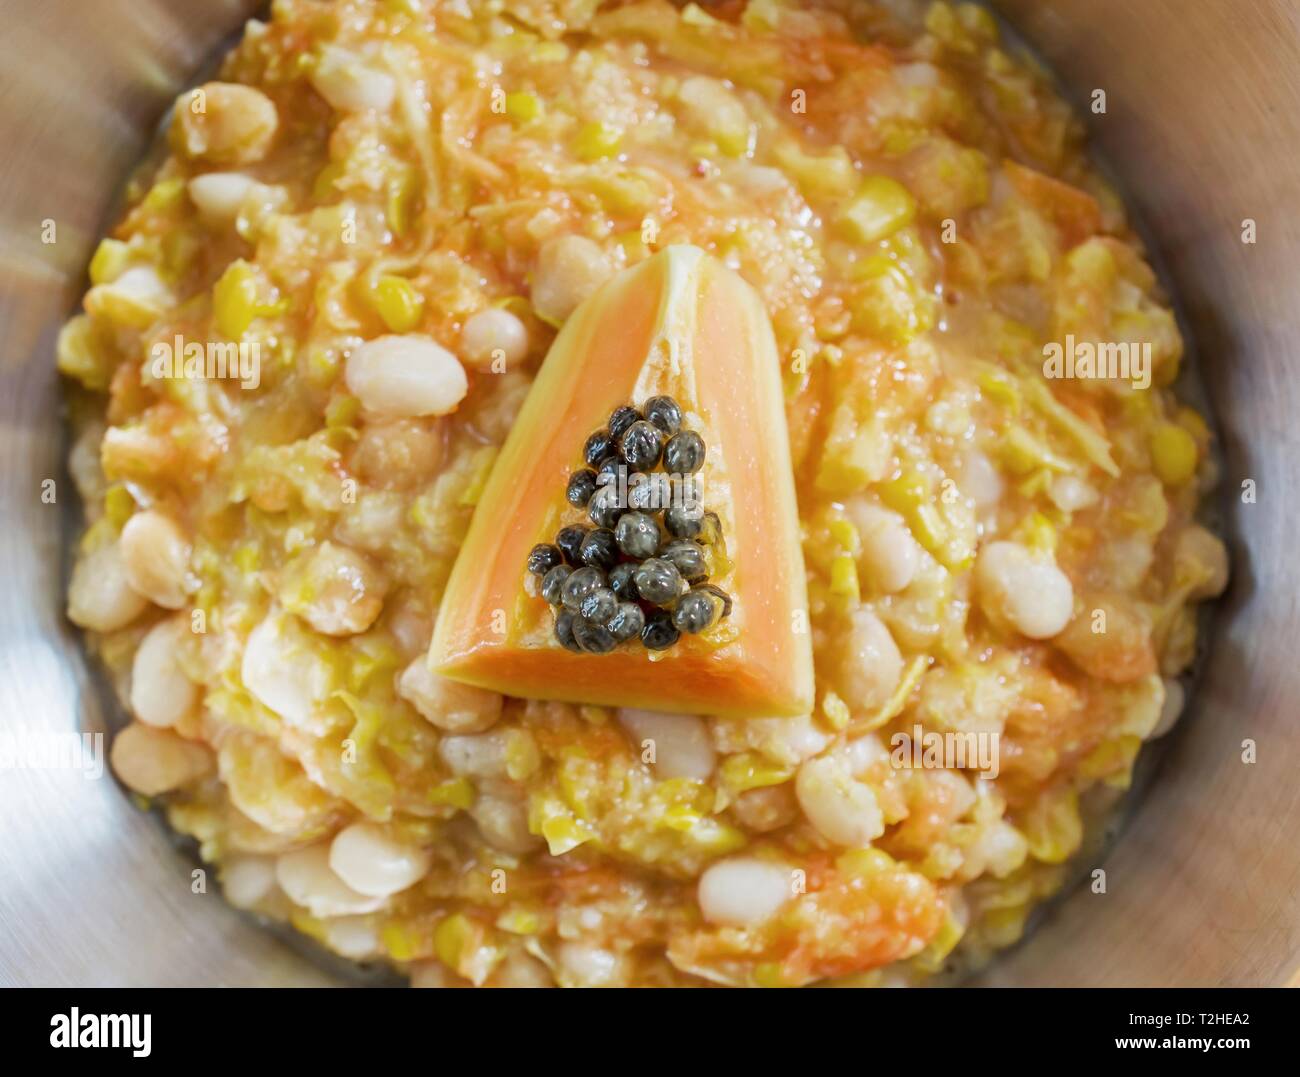 Le maïs bouilli avec de la papaye et les pois chiches, plat de Timor Leste, la cuisine asiatique, le Timor oriental Banque D'Images